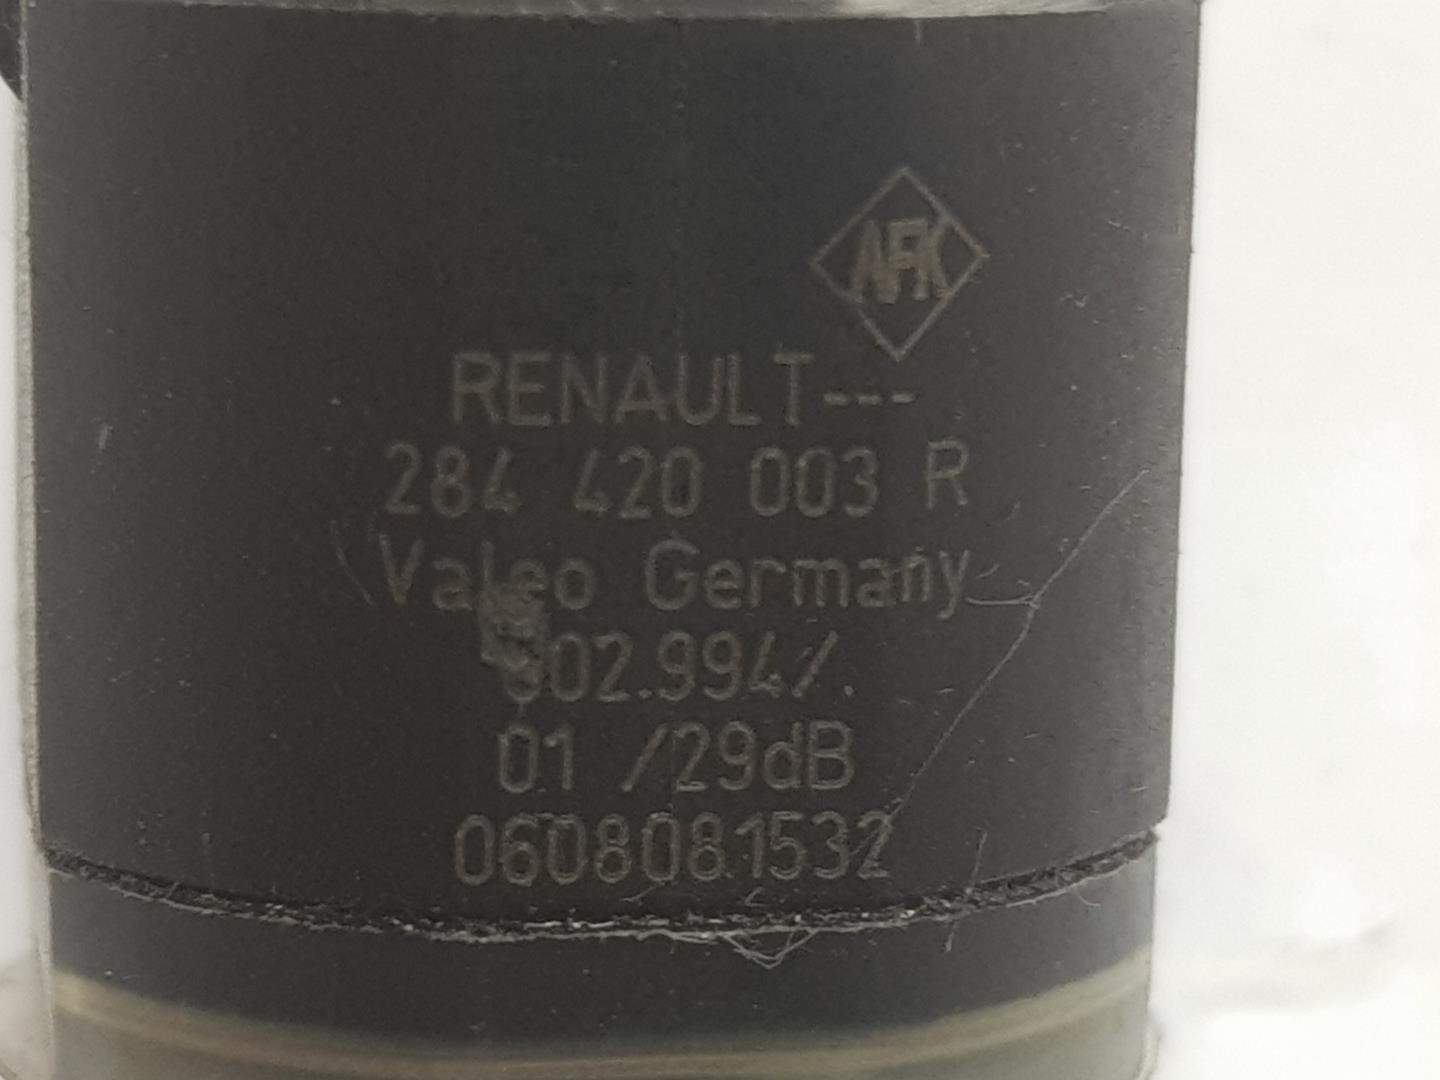 RENAULT Megane 3 generation (2008-2020) Parking Sensor Rear 284420003R, 284420003R 19883461